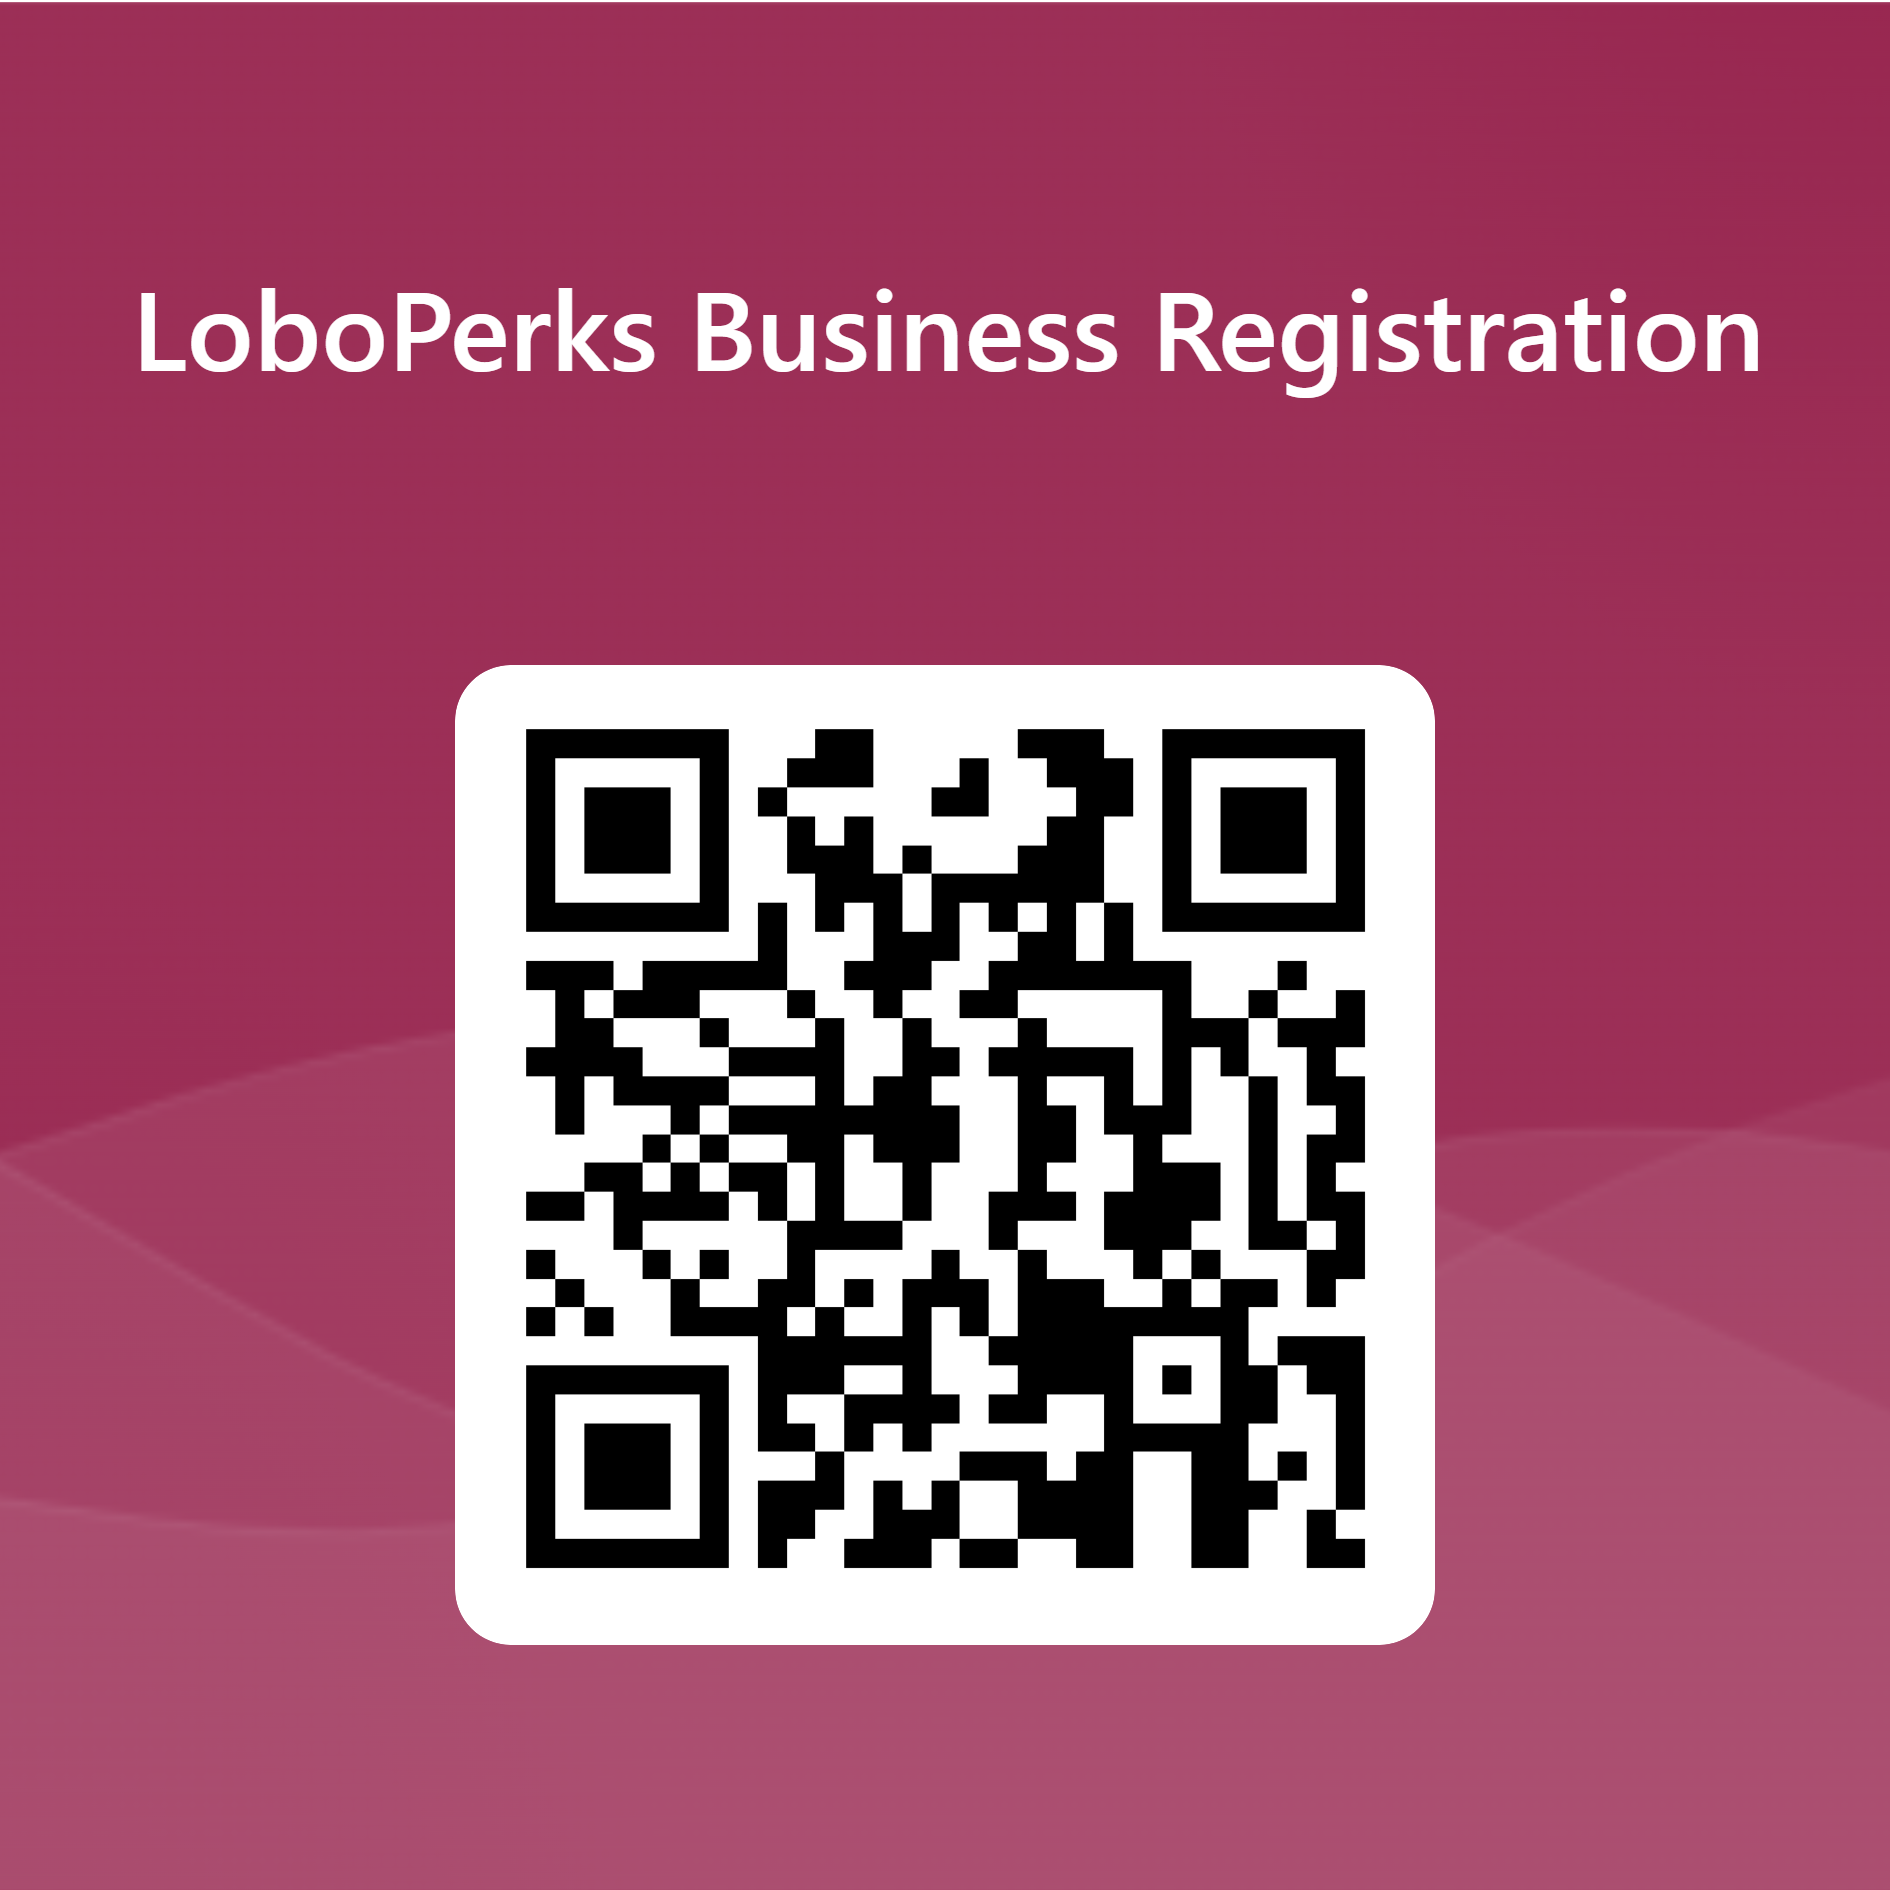 qr-code-for-lobo-perks-business-registration-new